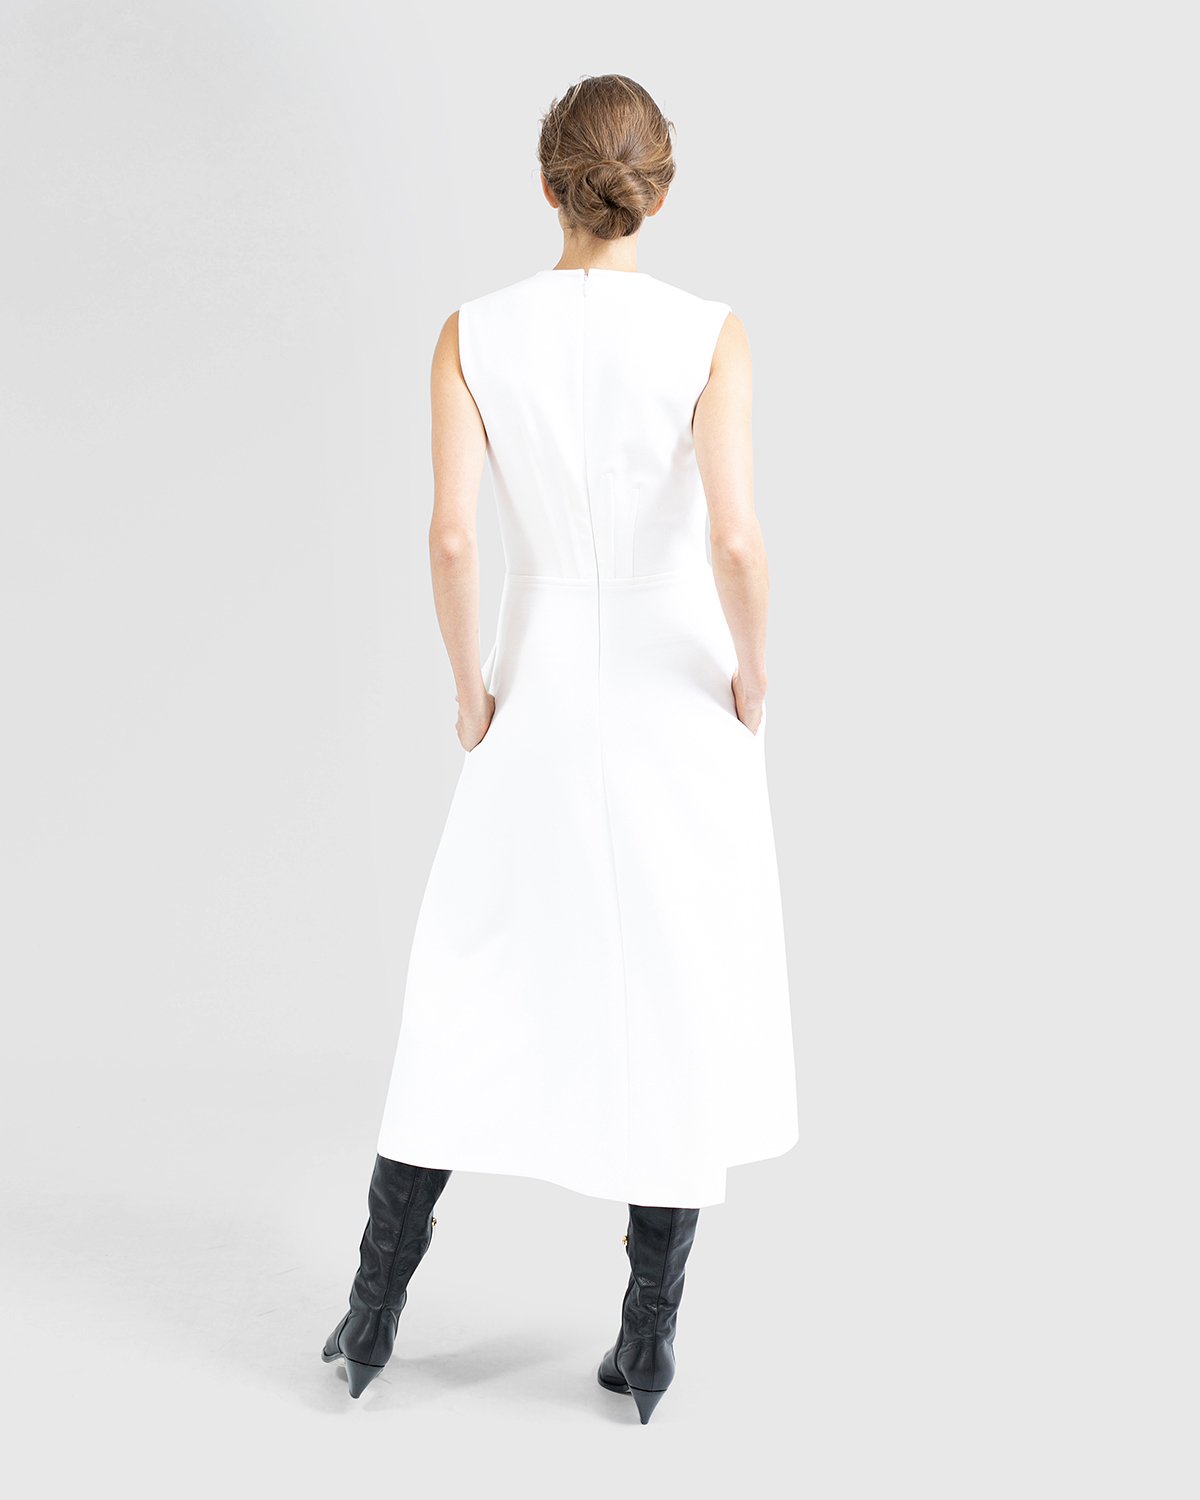 White sleeveless dress | | Genny